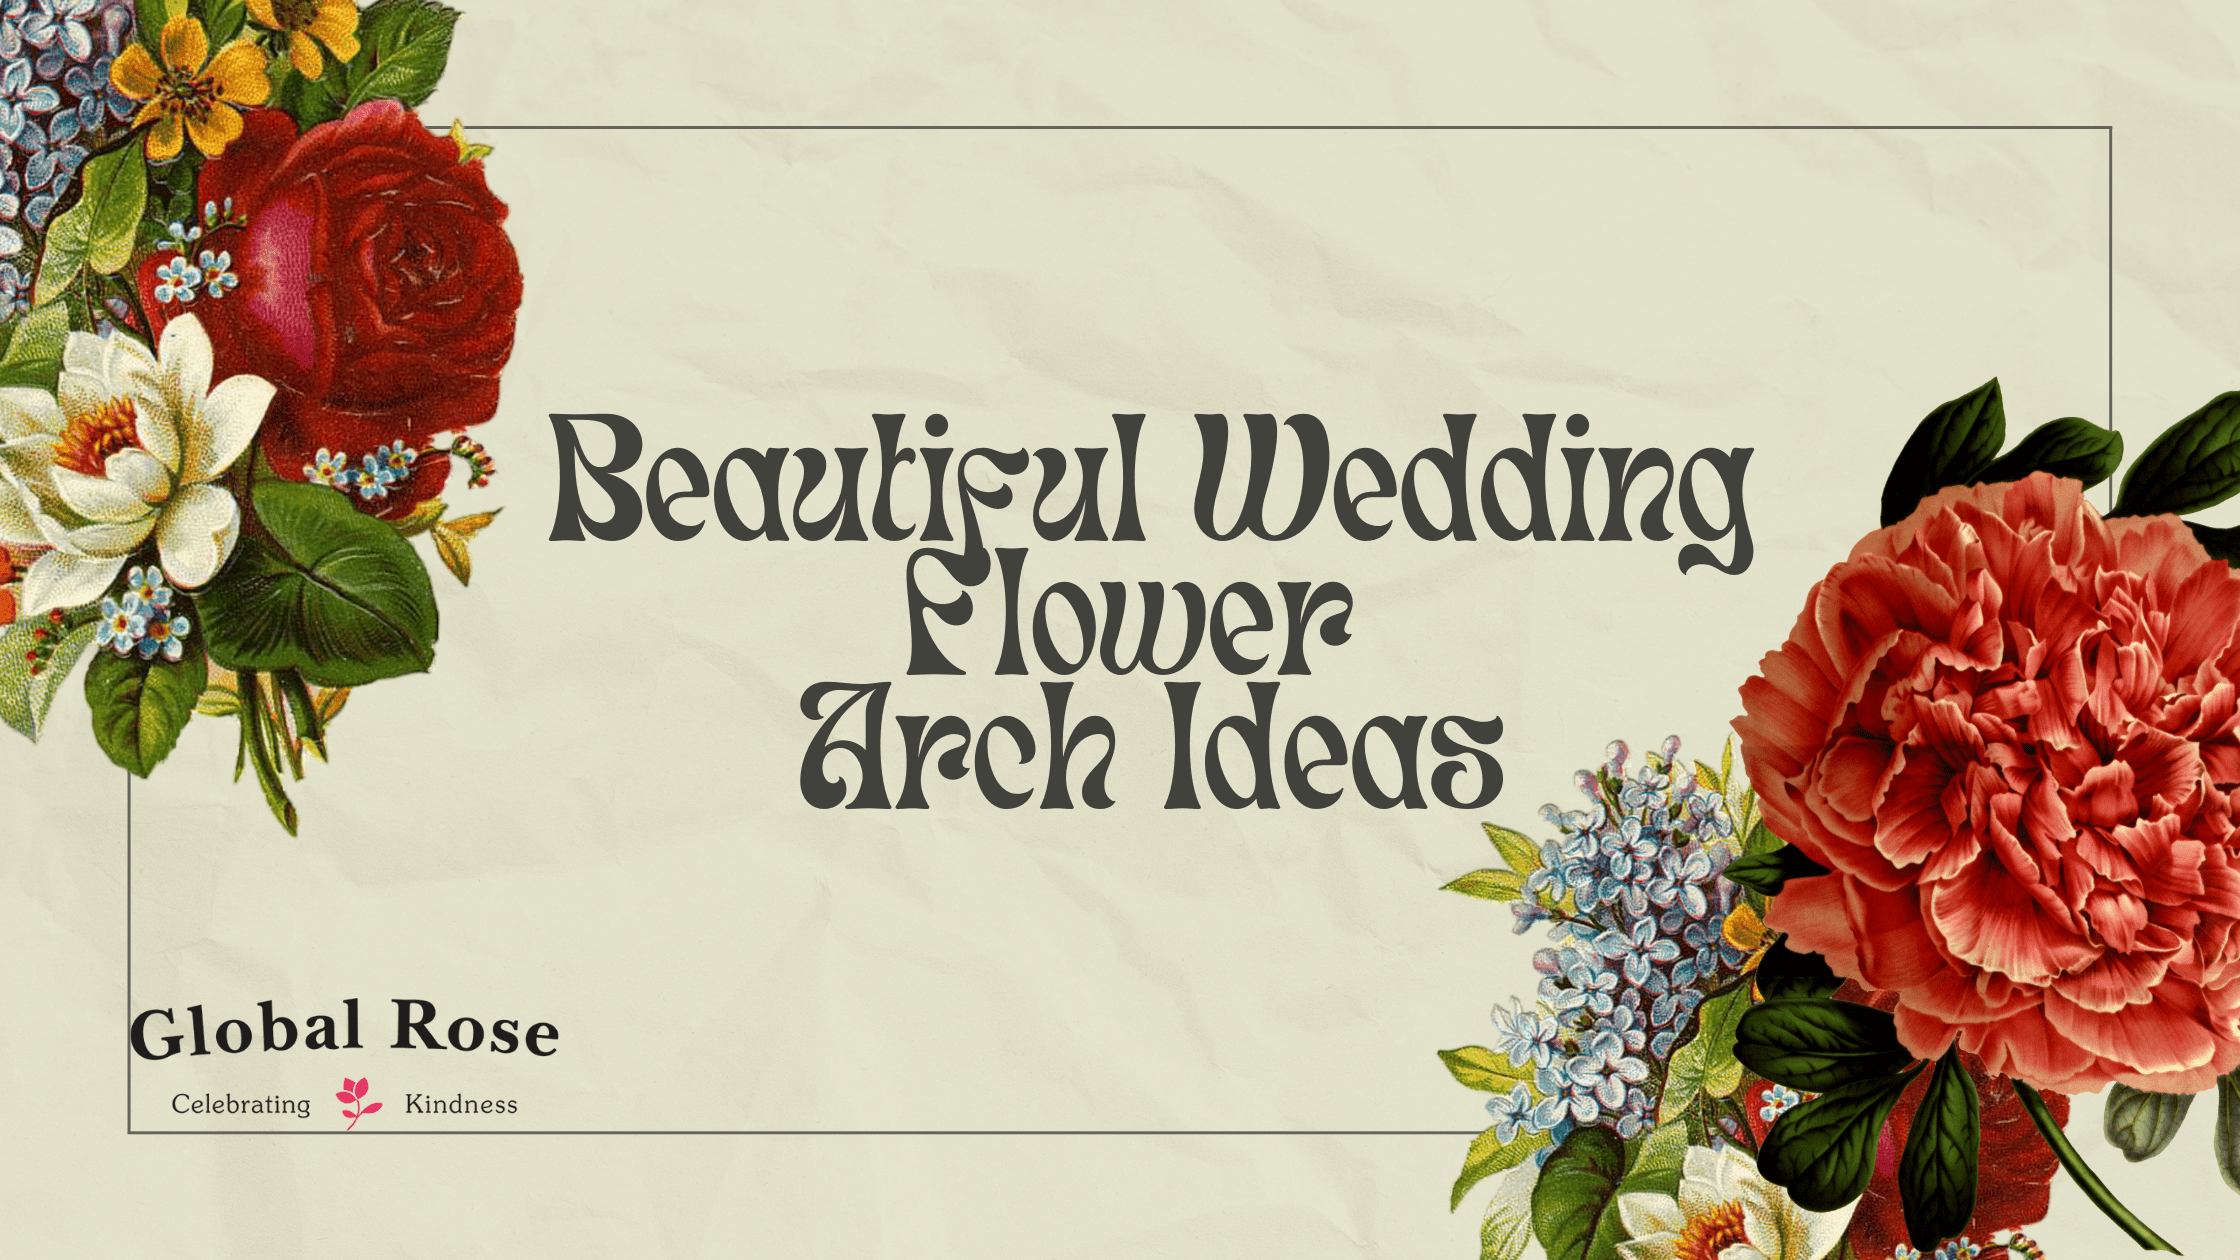 Beautiful Wedding Flower Arch Ideas